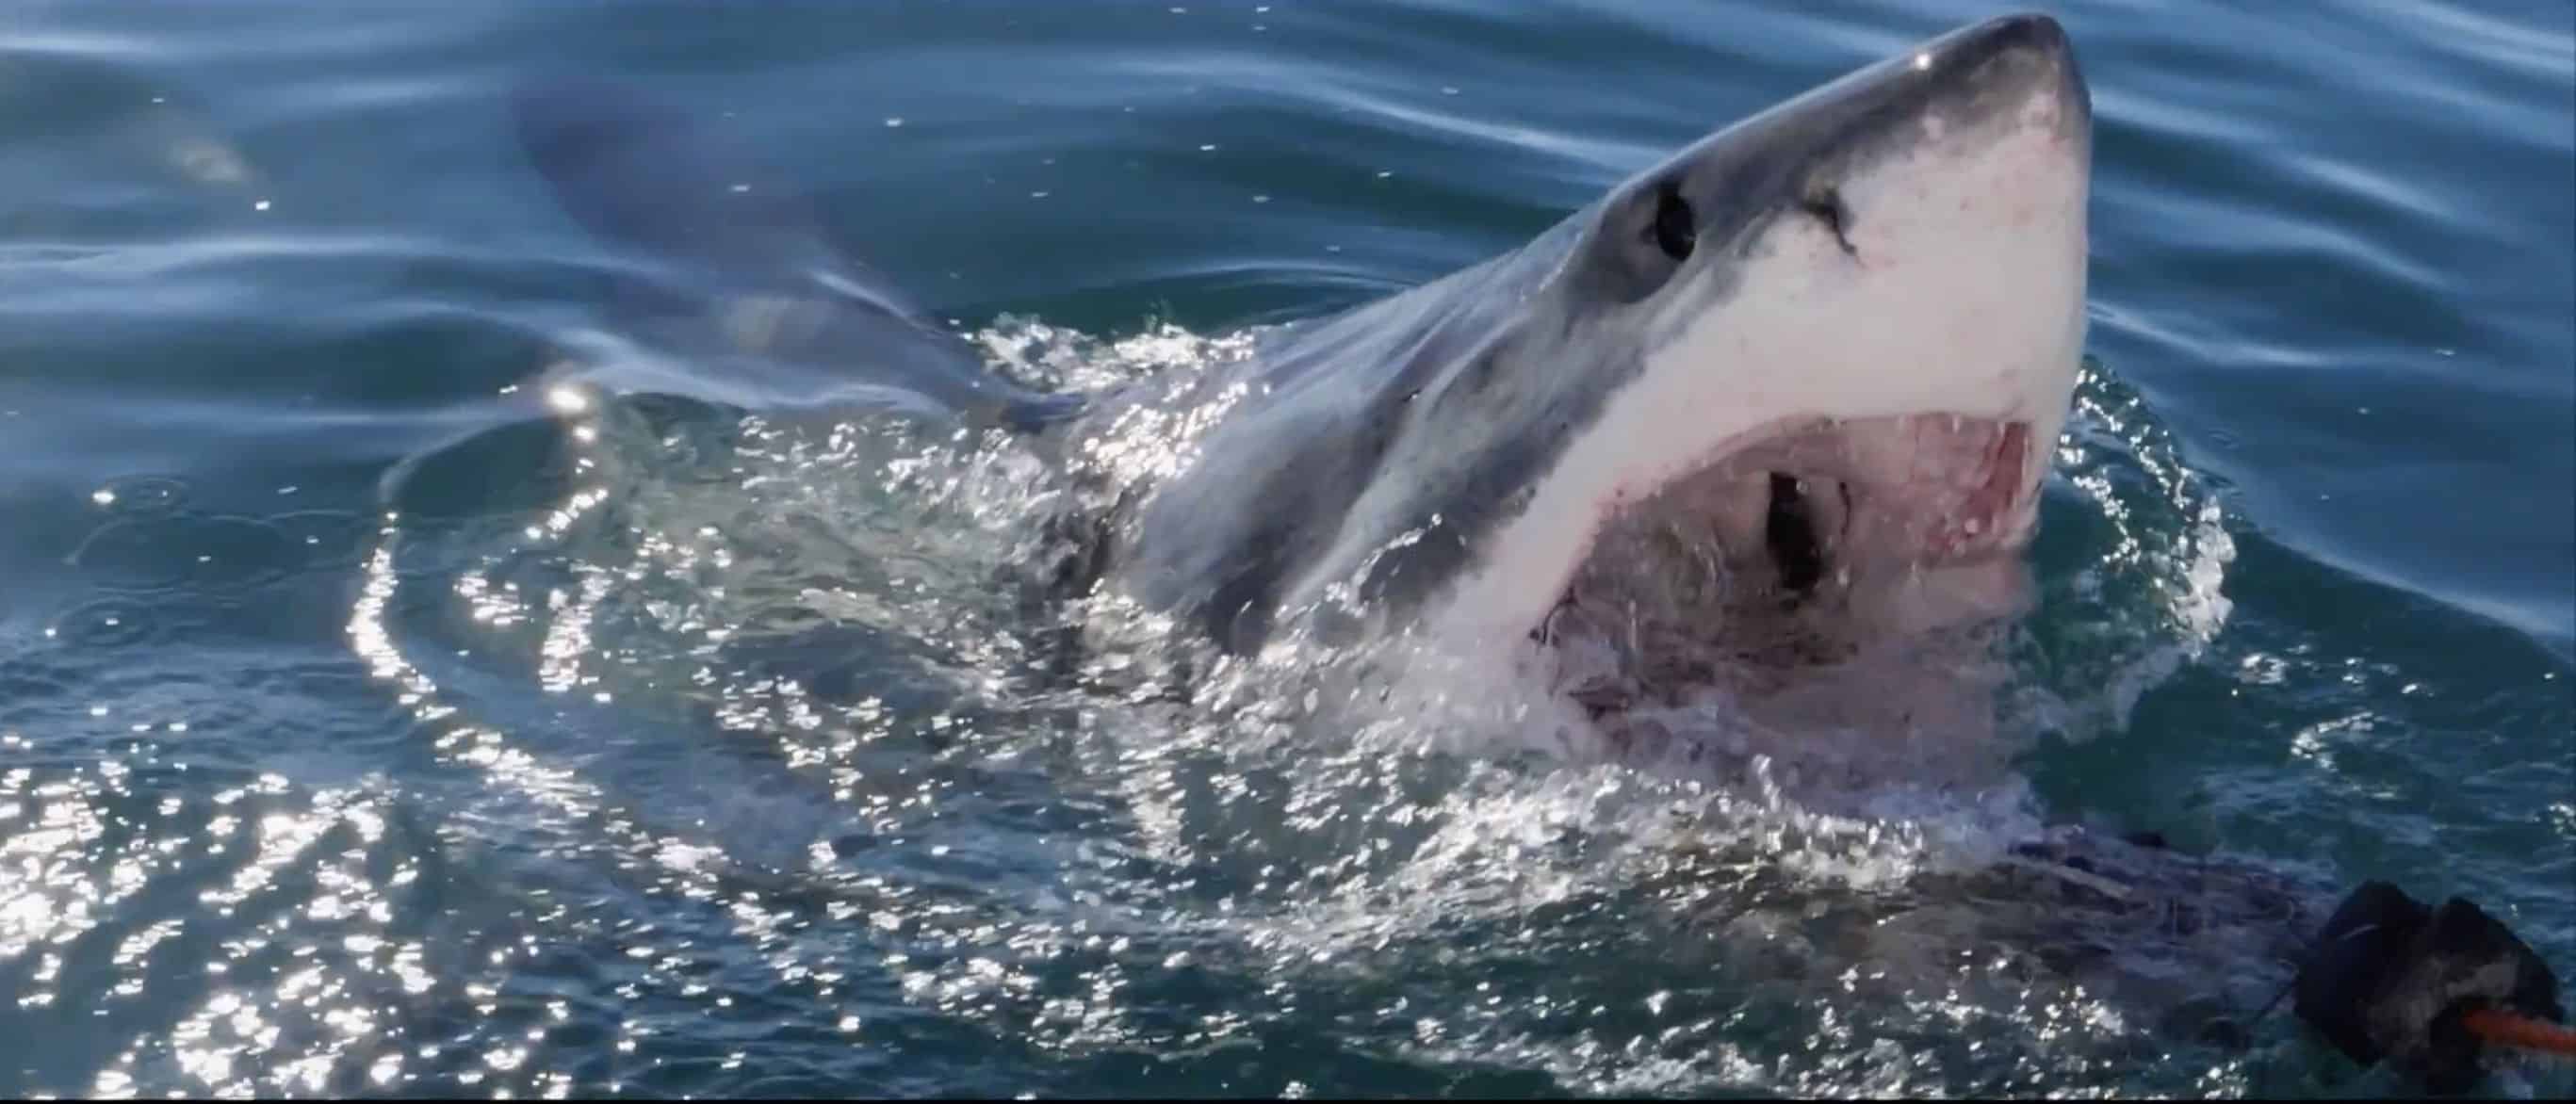 Spektakularne wideo - wielki biały rekin leci w powietrzu